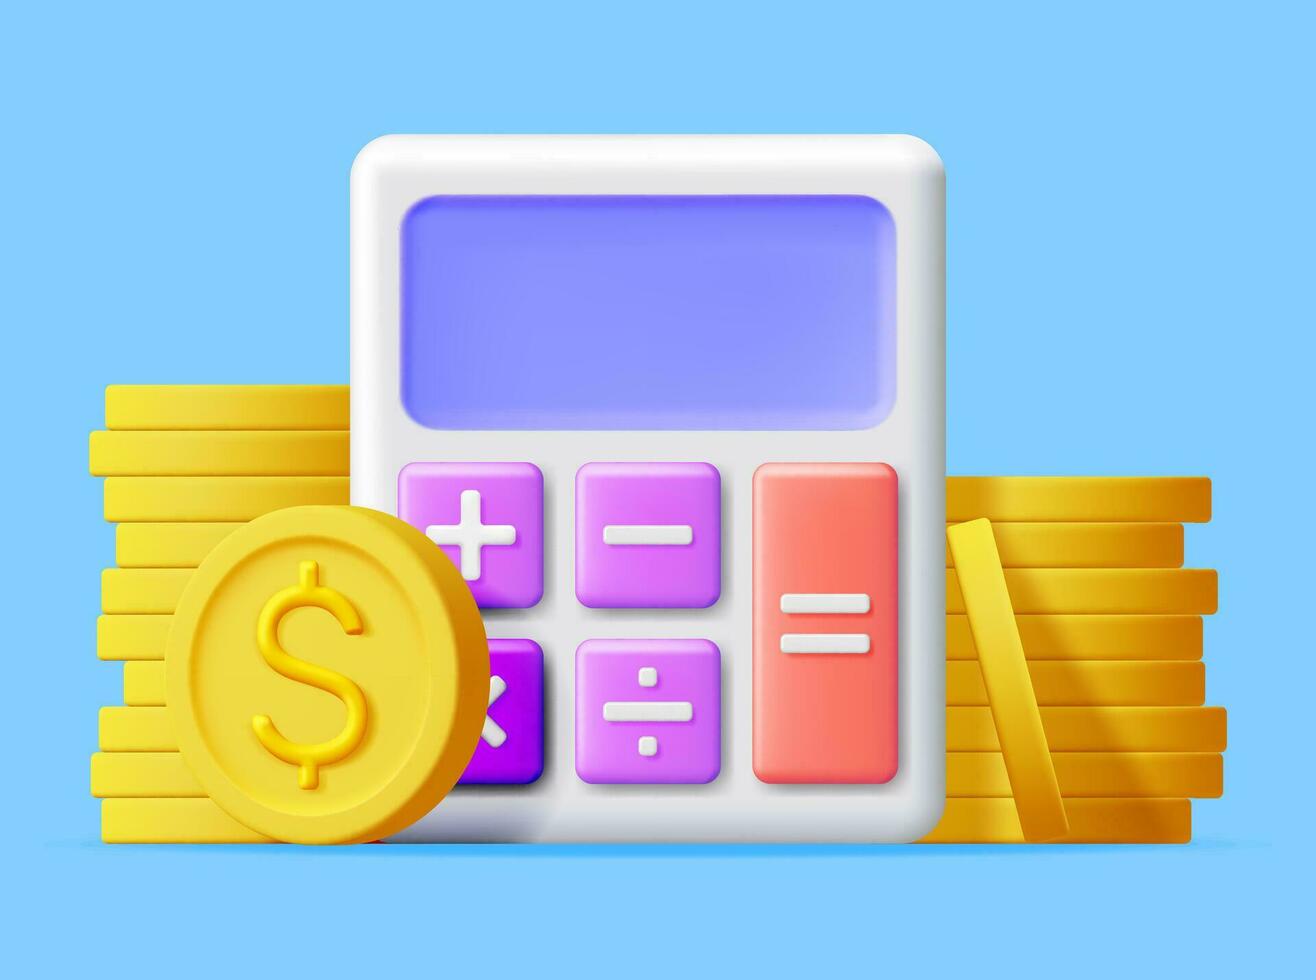 3d modern rekenmachine met gouden munten geïsoleerd. wiskunde icoon. financieel wiskunde apparaat met geld. tellen begroting en spaargeld concept. contant geld en belastingen, financieel beheer. vector illustratie